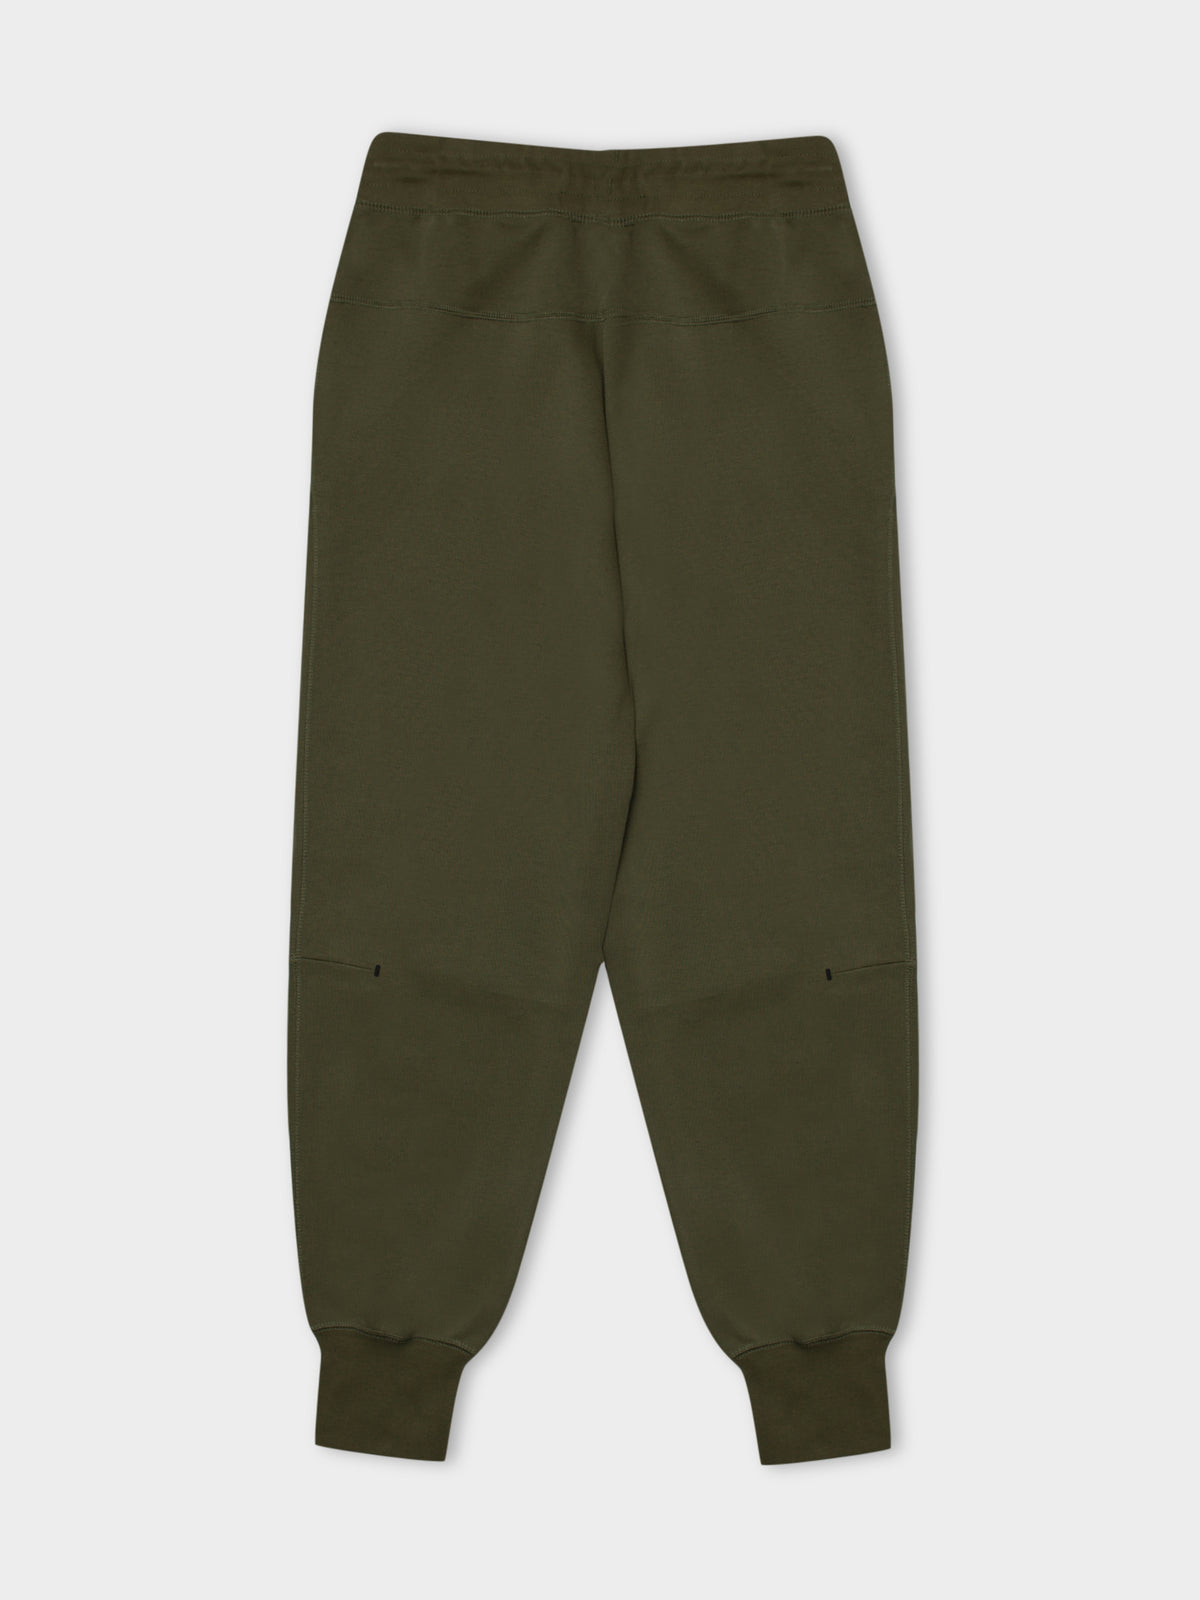 Sportswear Tech Fleece Trackpants in Medium Olive Green